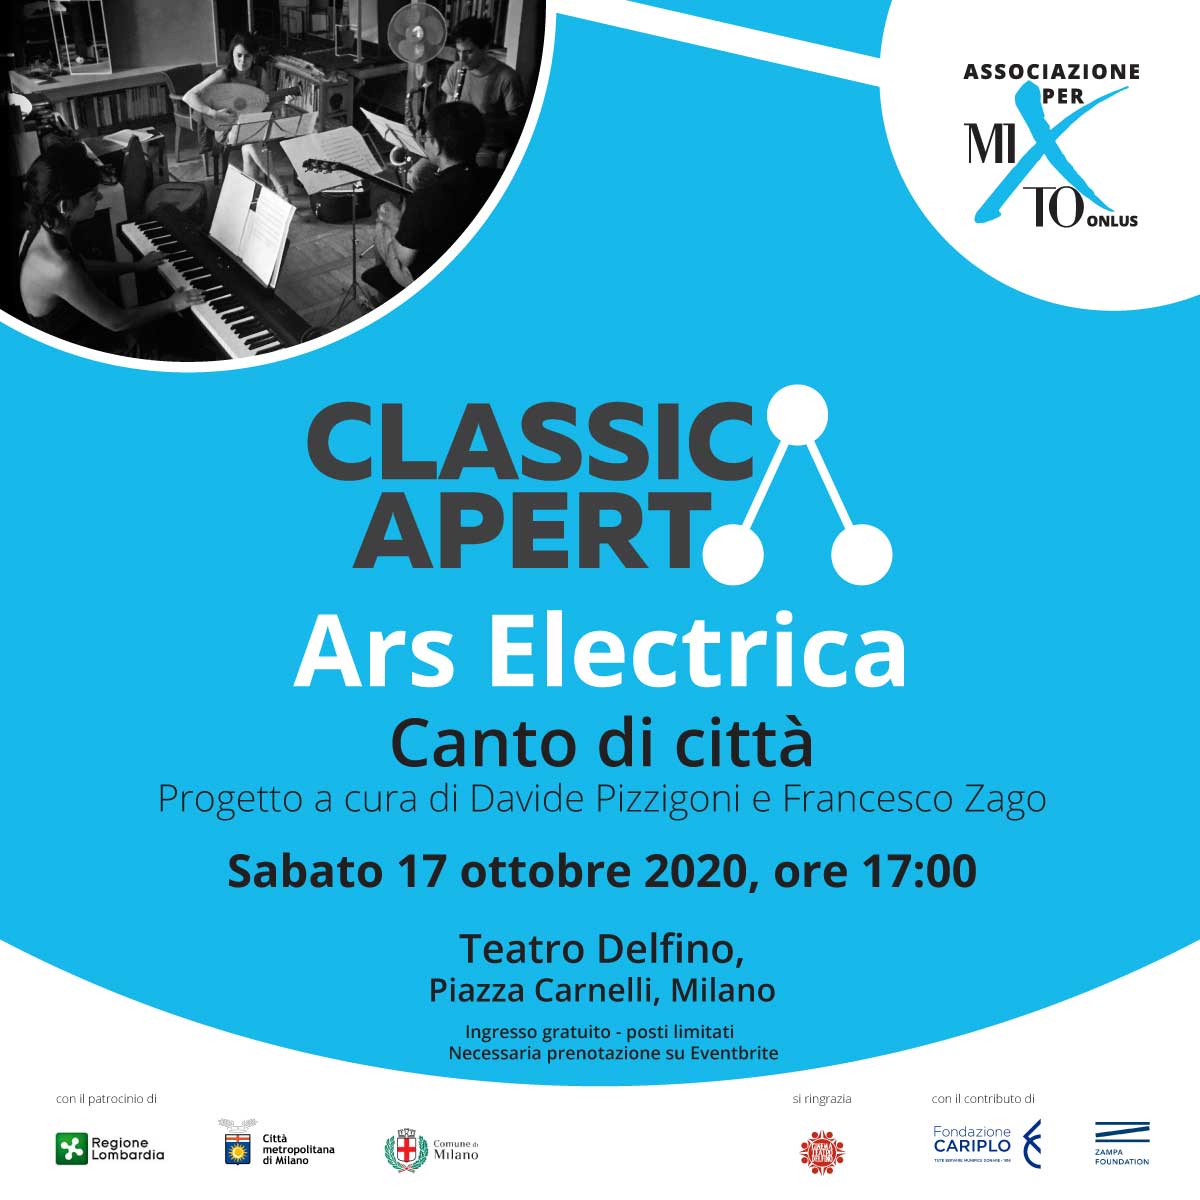 ClassicAperta presenta: Ars Electrica - Canto di città Progetto a cura di Davide Pizzigoni e Francesco Zago